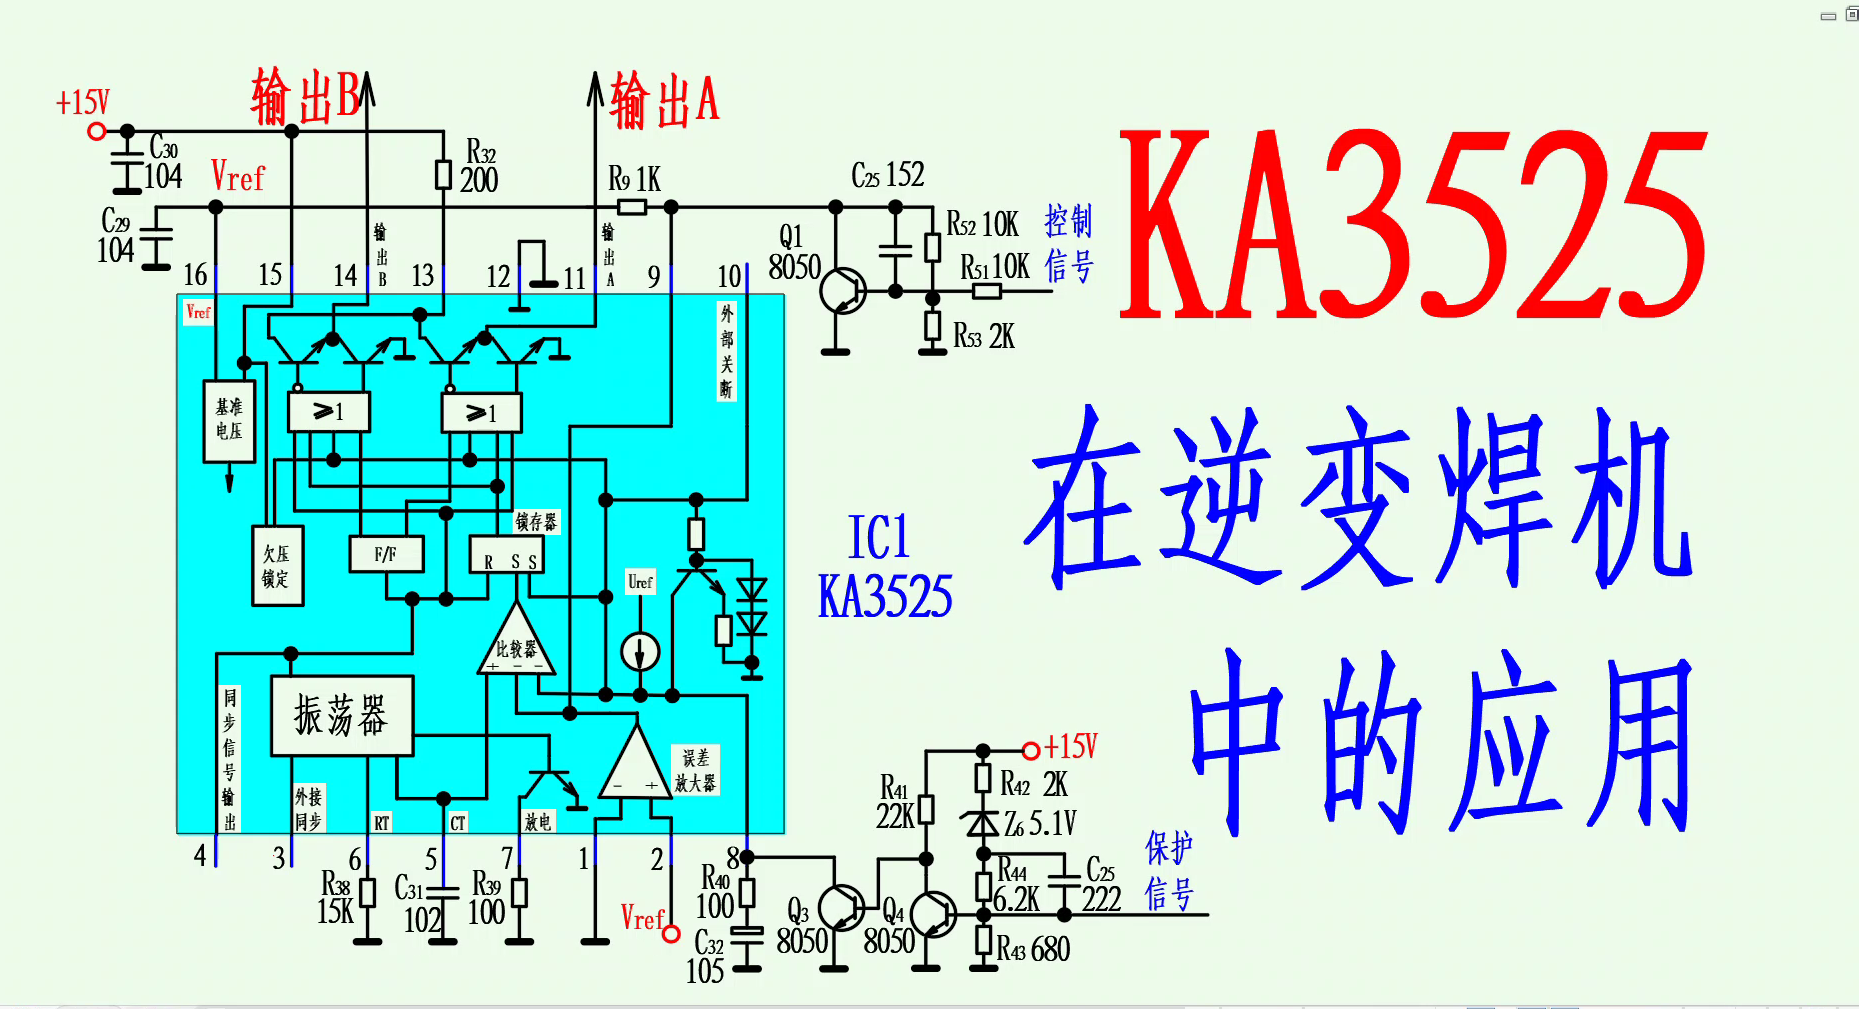 電壓型PWM芯片KA3525在直流逆變電焊機中的應用